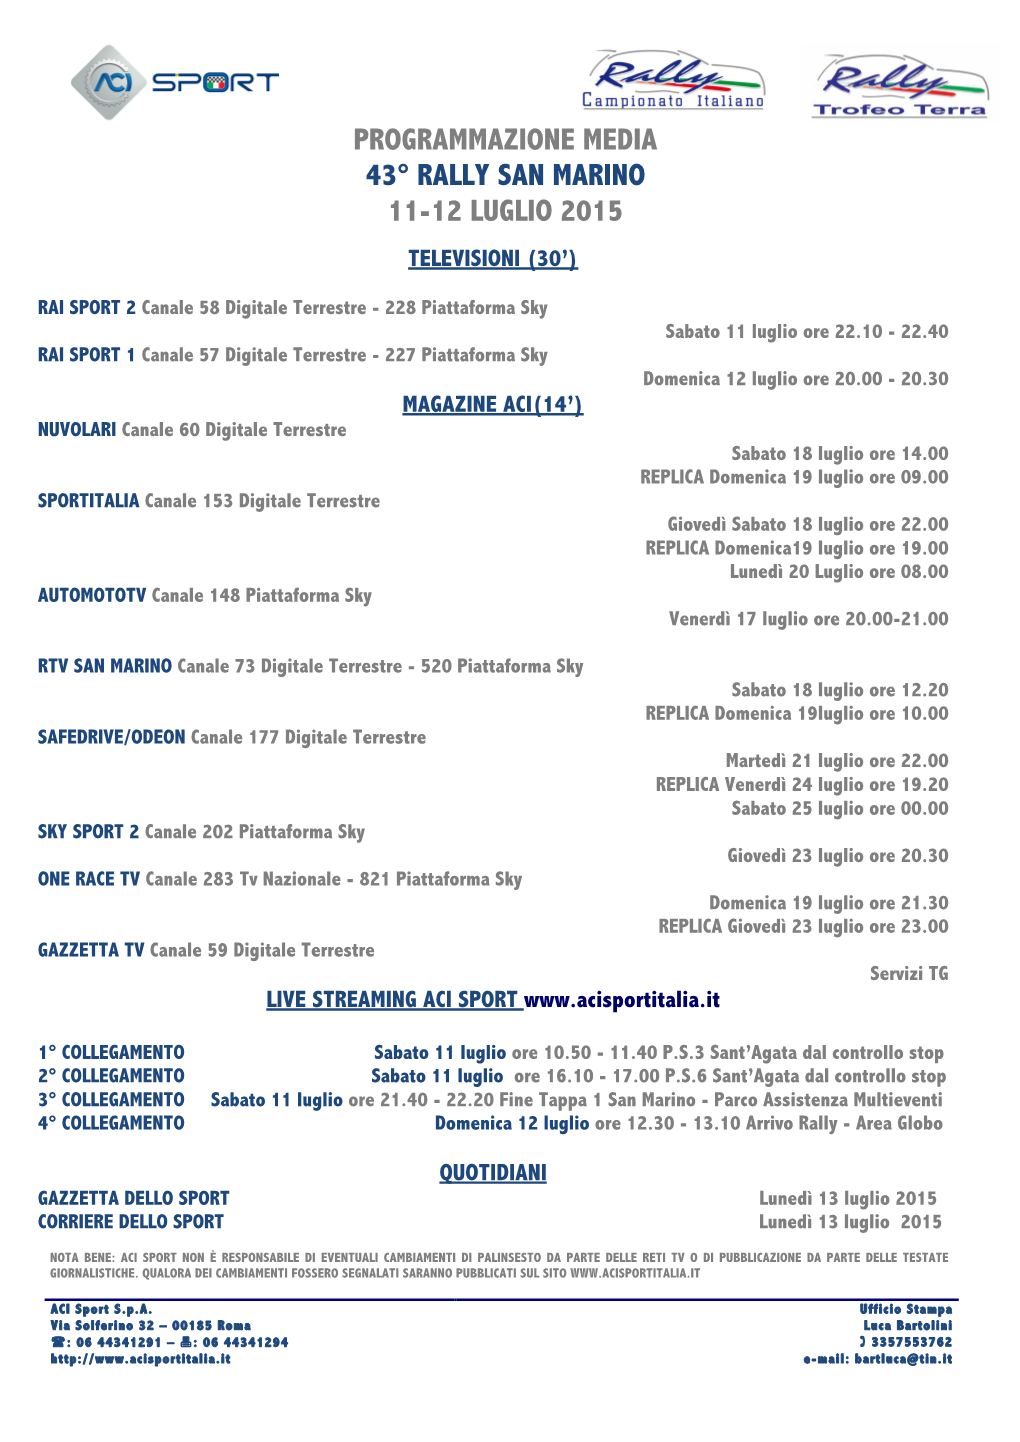 Programmazione Media 43° Rally San Marino 11-12 Luglio 2015